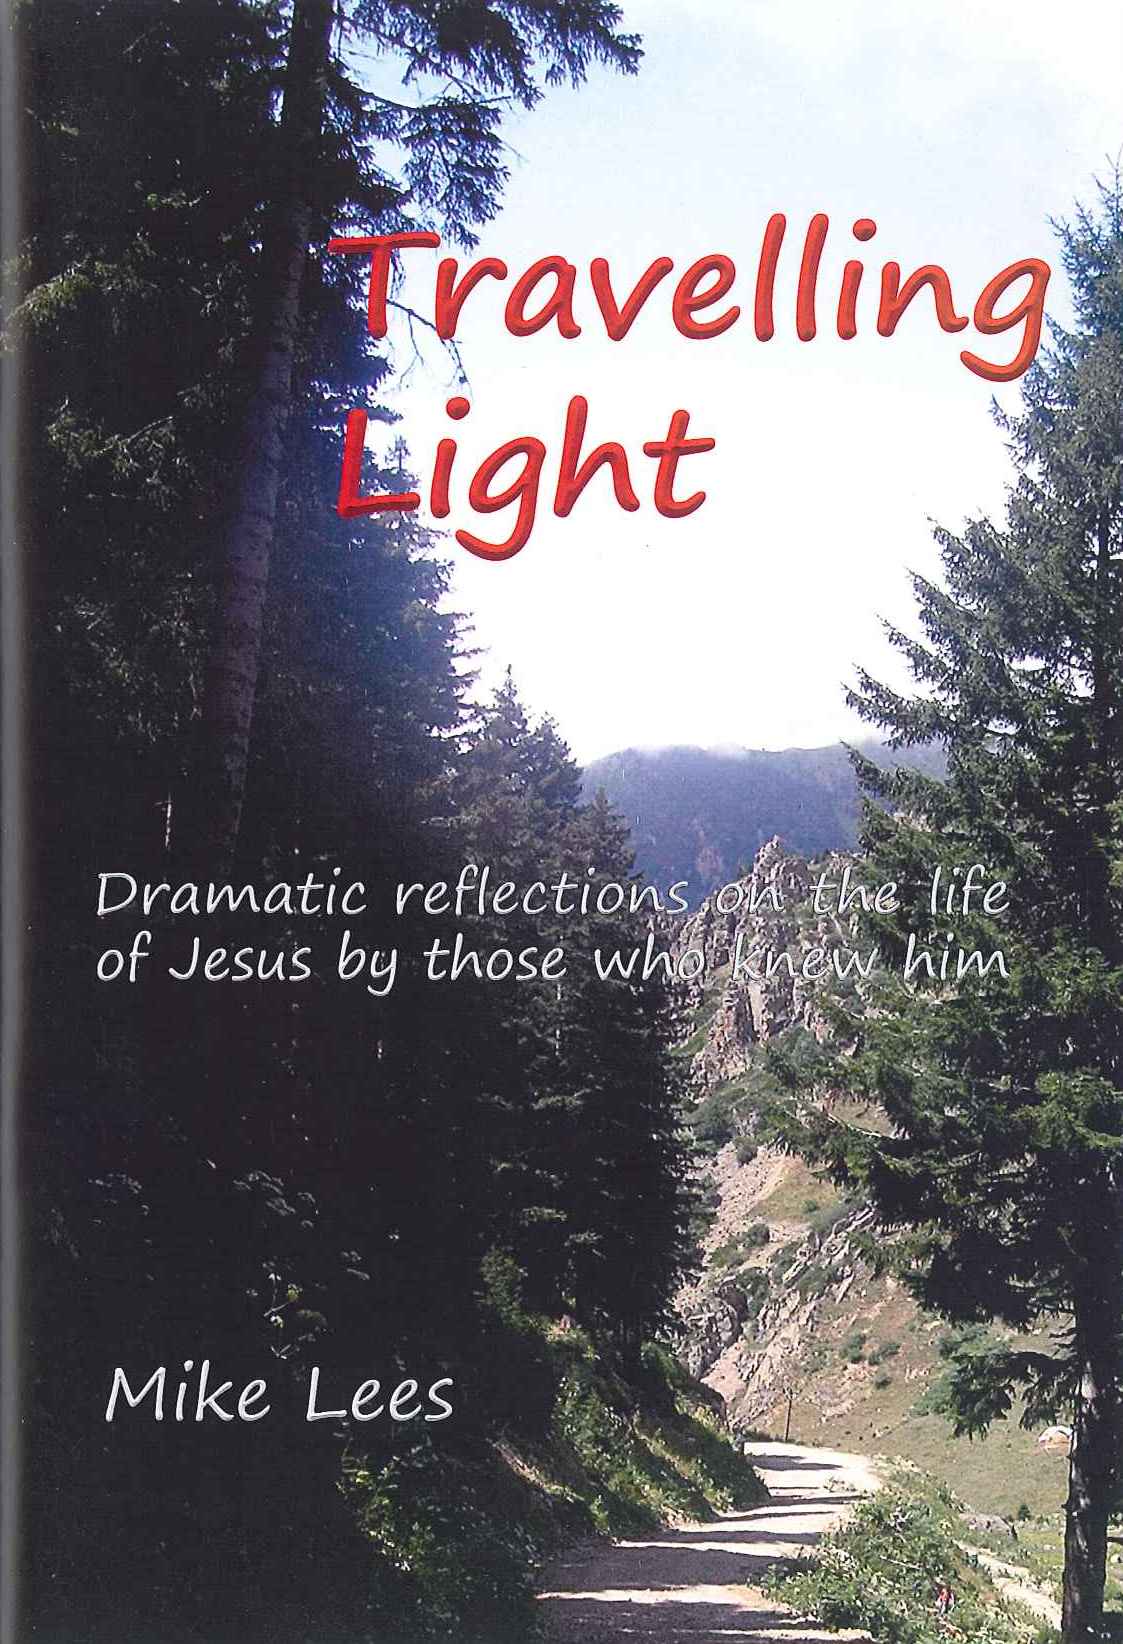 Moorleys – Travelling Light by Mike Lees